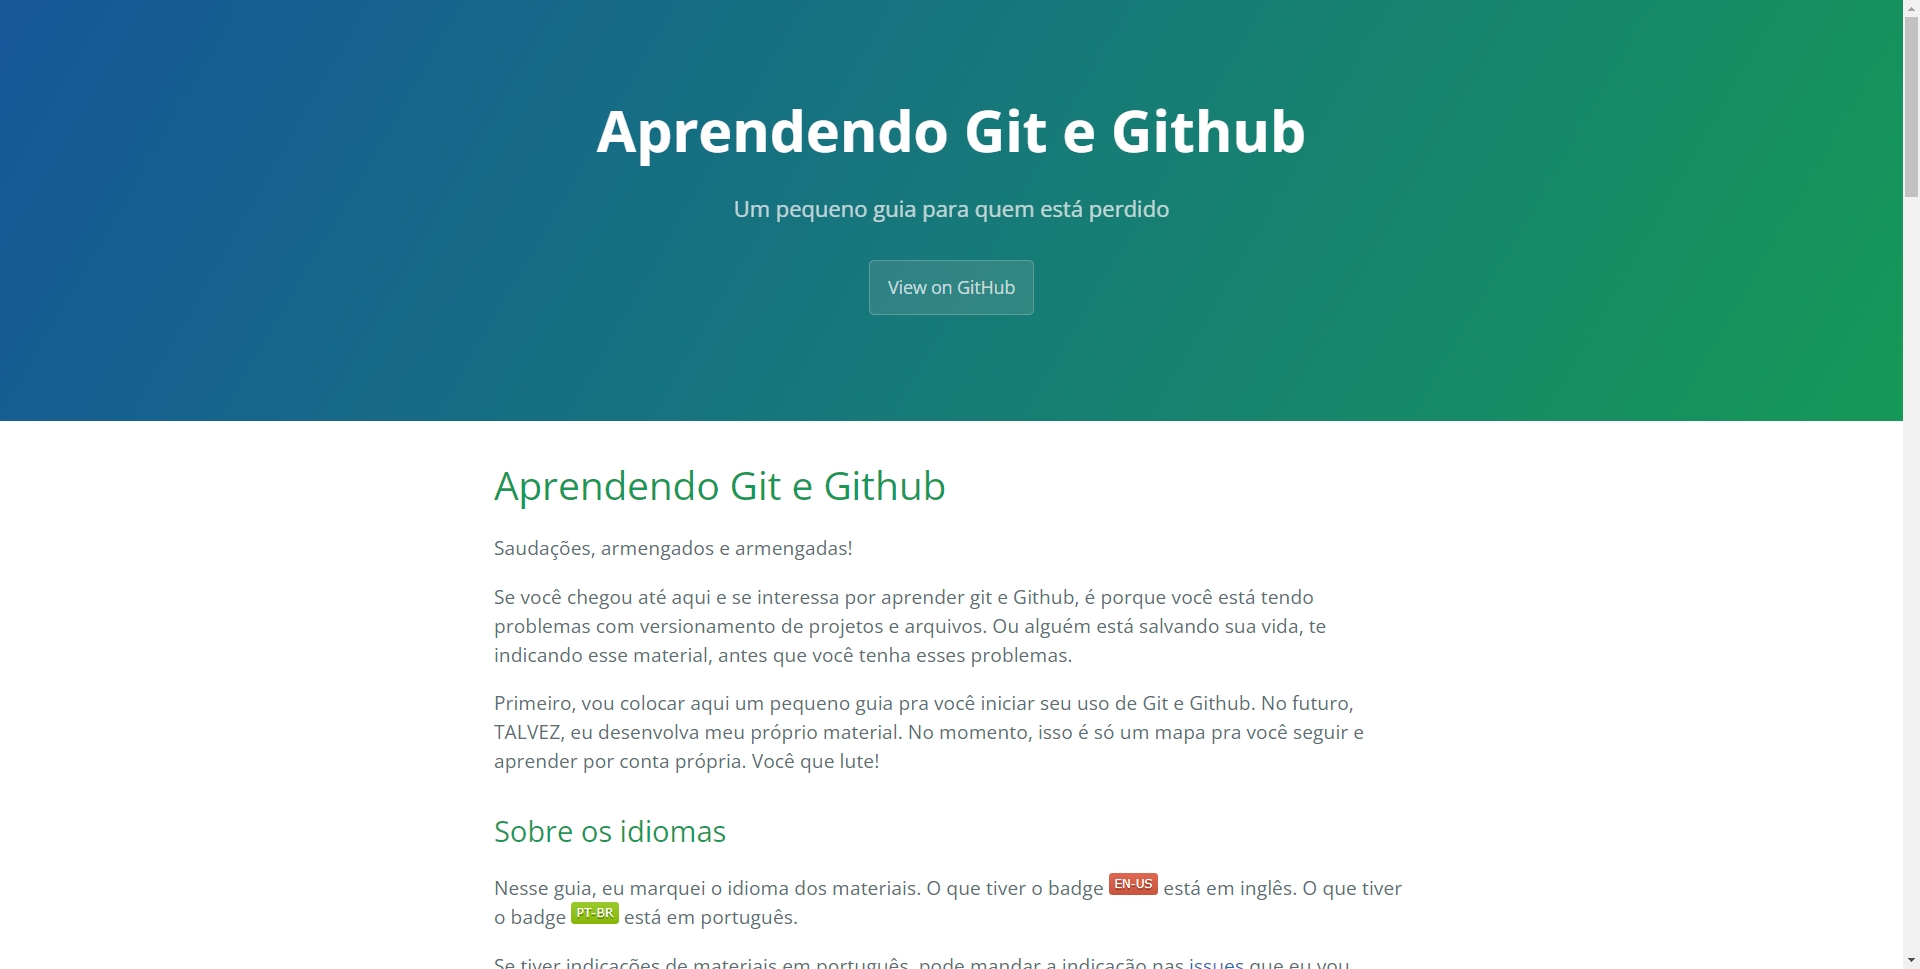 Aprendendo Git e Github